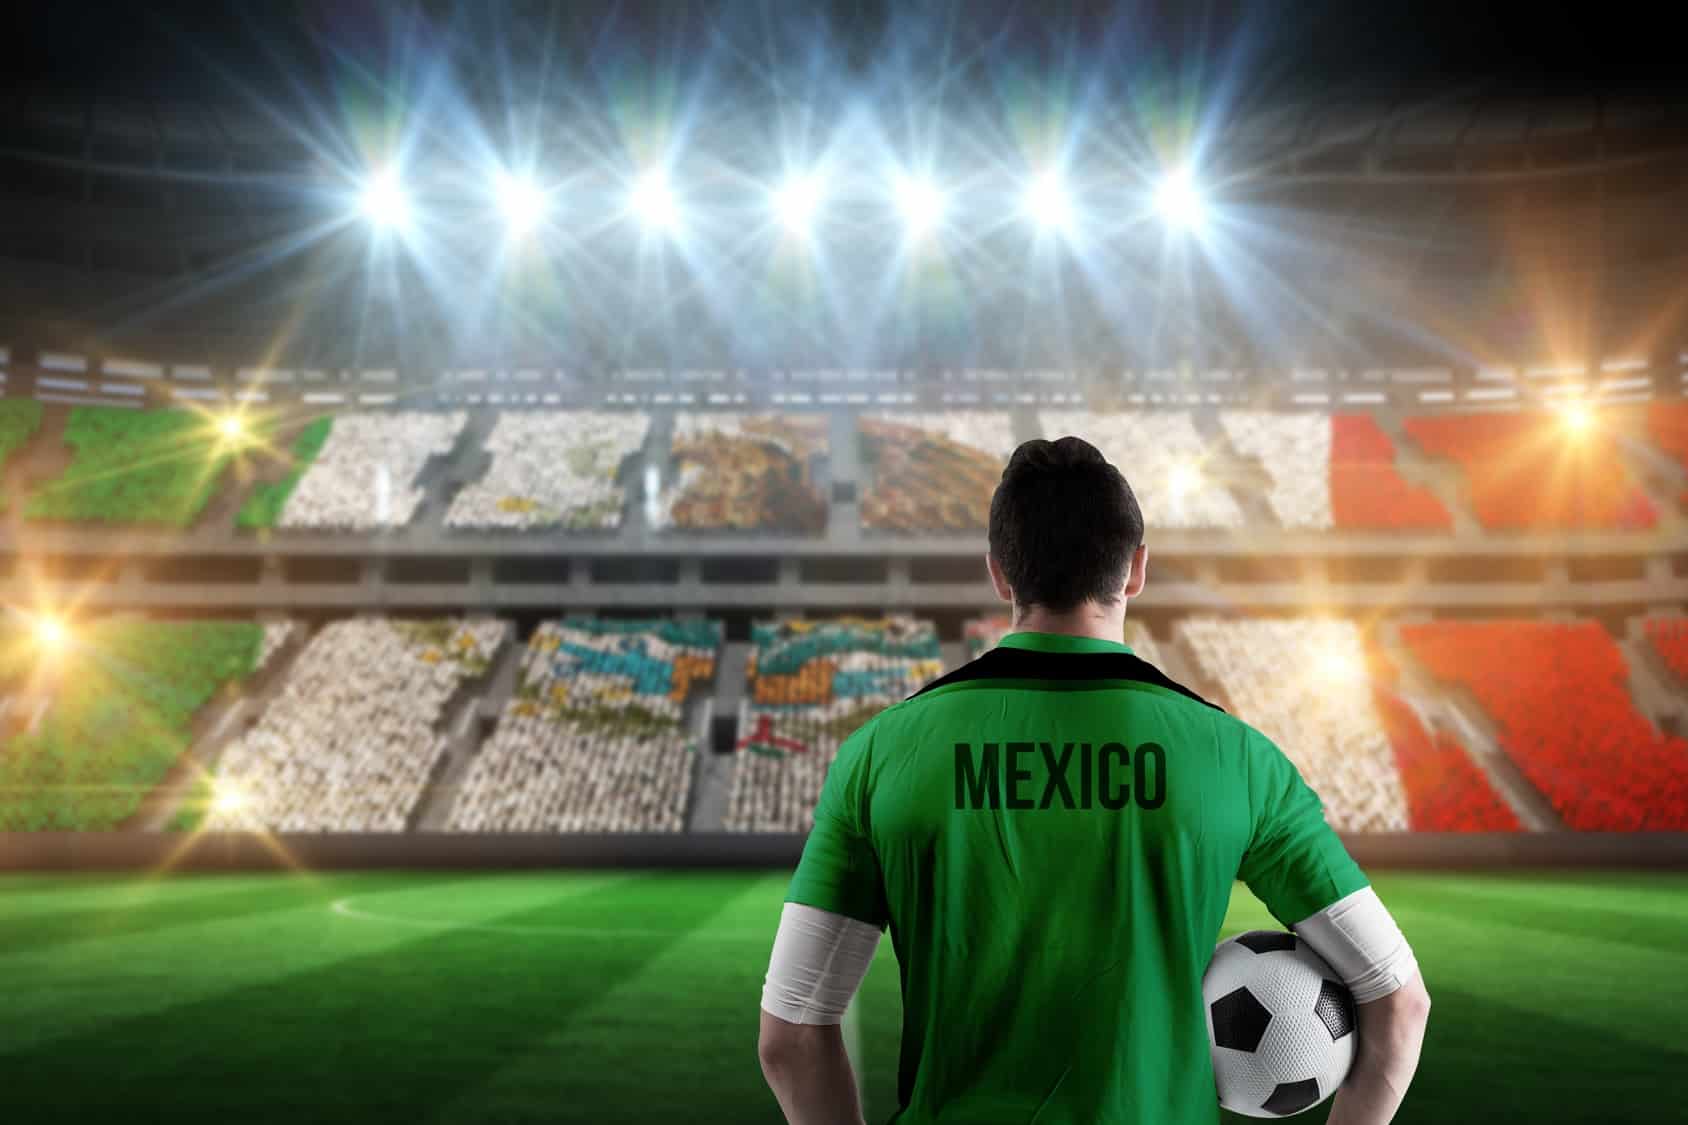 El juego del domingo entre México y Alemania no sólo fue un hito futbolístico, fue también un récord en lo mediático, al alcanzar la audiencia televisiva más alta en la historia de la TV nacional.